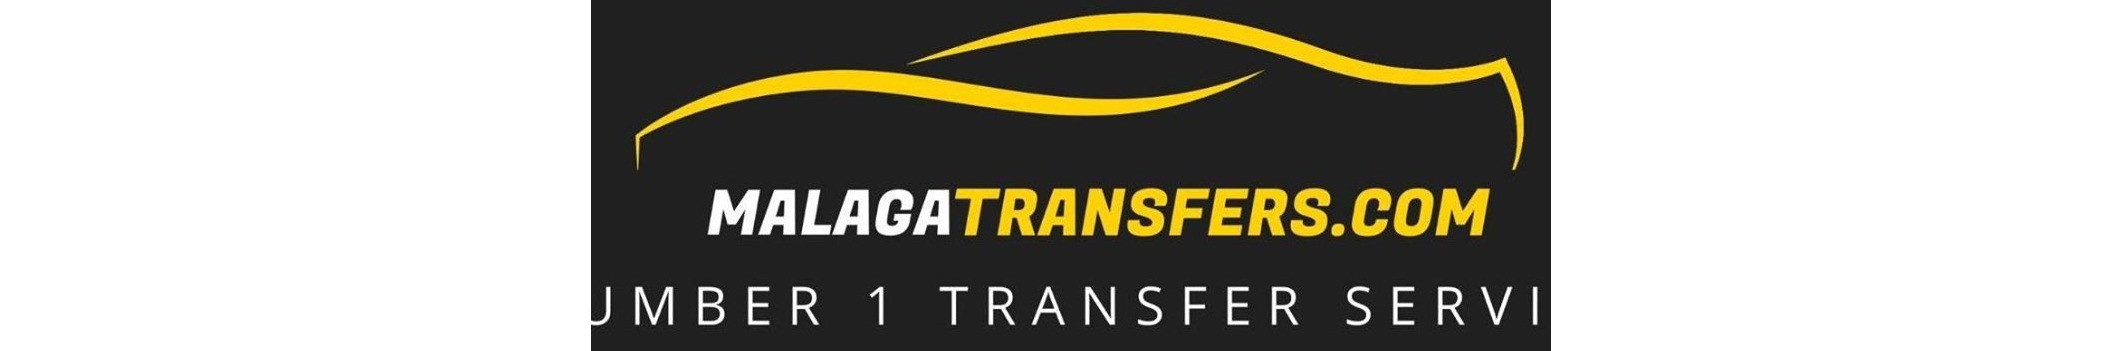 Transfer service from Malaga Airport across Costa Del Sol